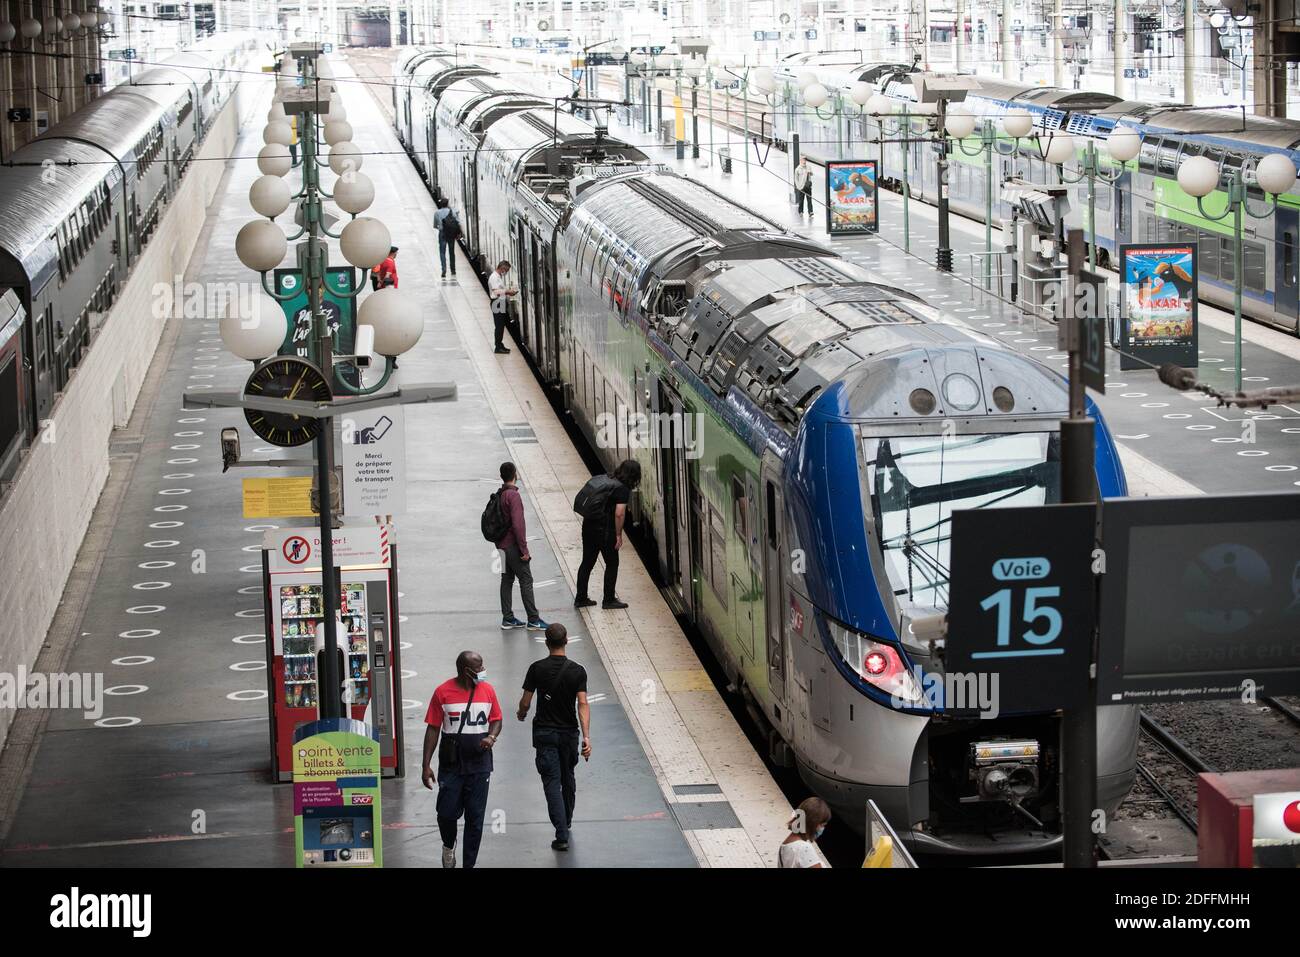 Les gens prennent le train à la gare du Nord, à Paris, en France, le 14 août 2020 pendant la pandémie du COVID-19 (nouveau coronavirus). Photo de Julie Sebadelha/ABACAPRESS.COM Banque D'Images